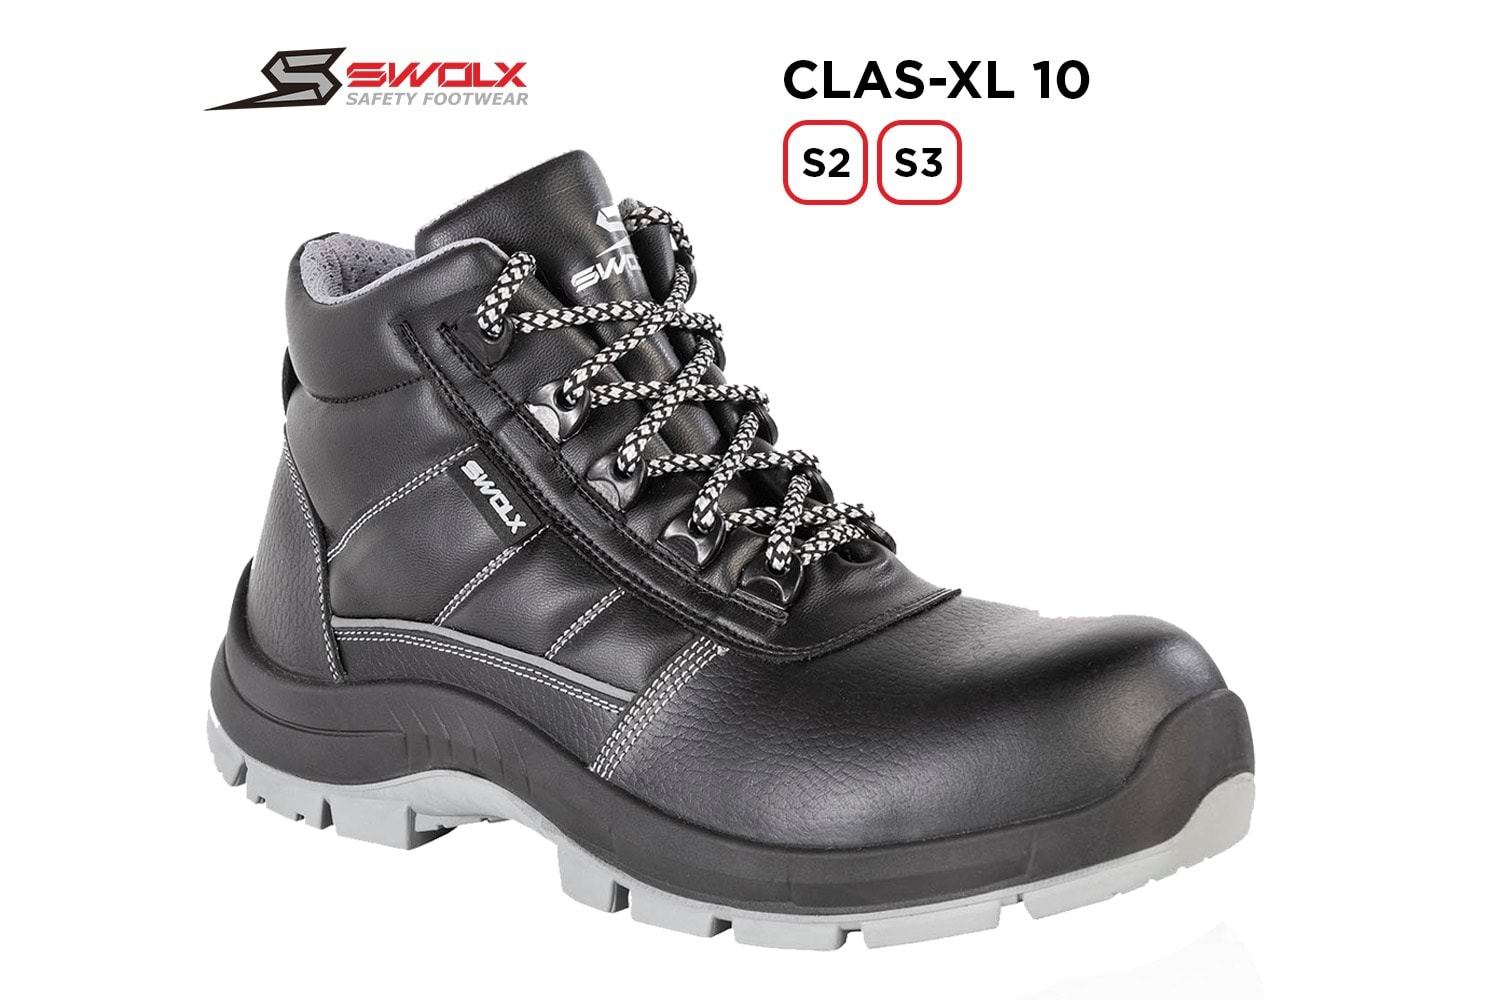 Swolx İş Ayakkabısı - Clas-Xl 10 S3 - 41